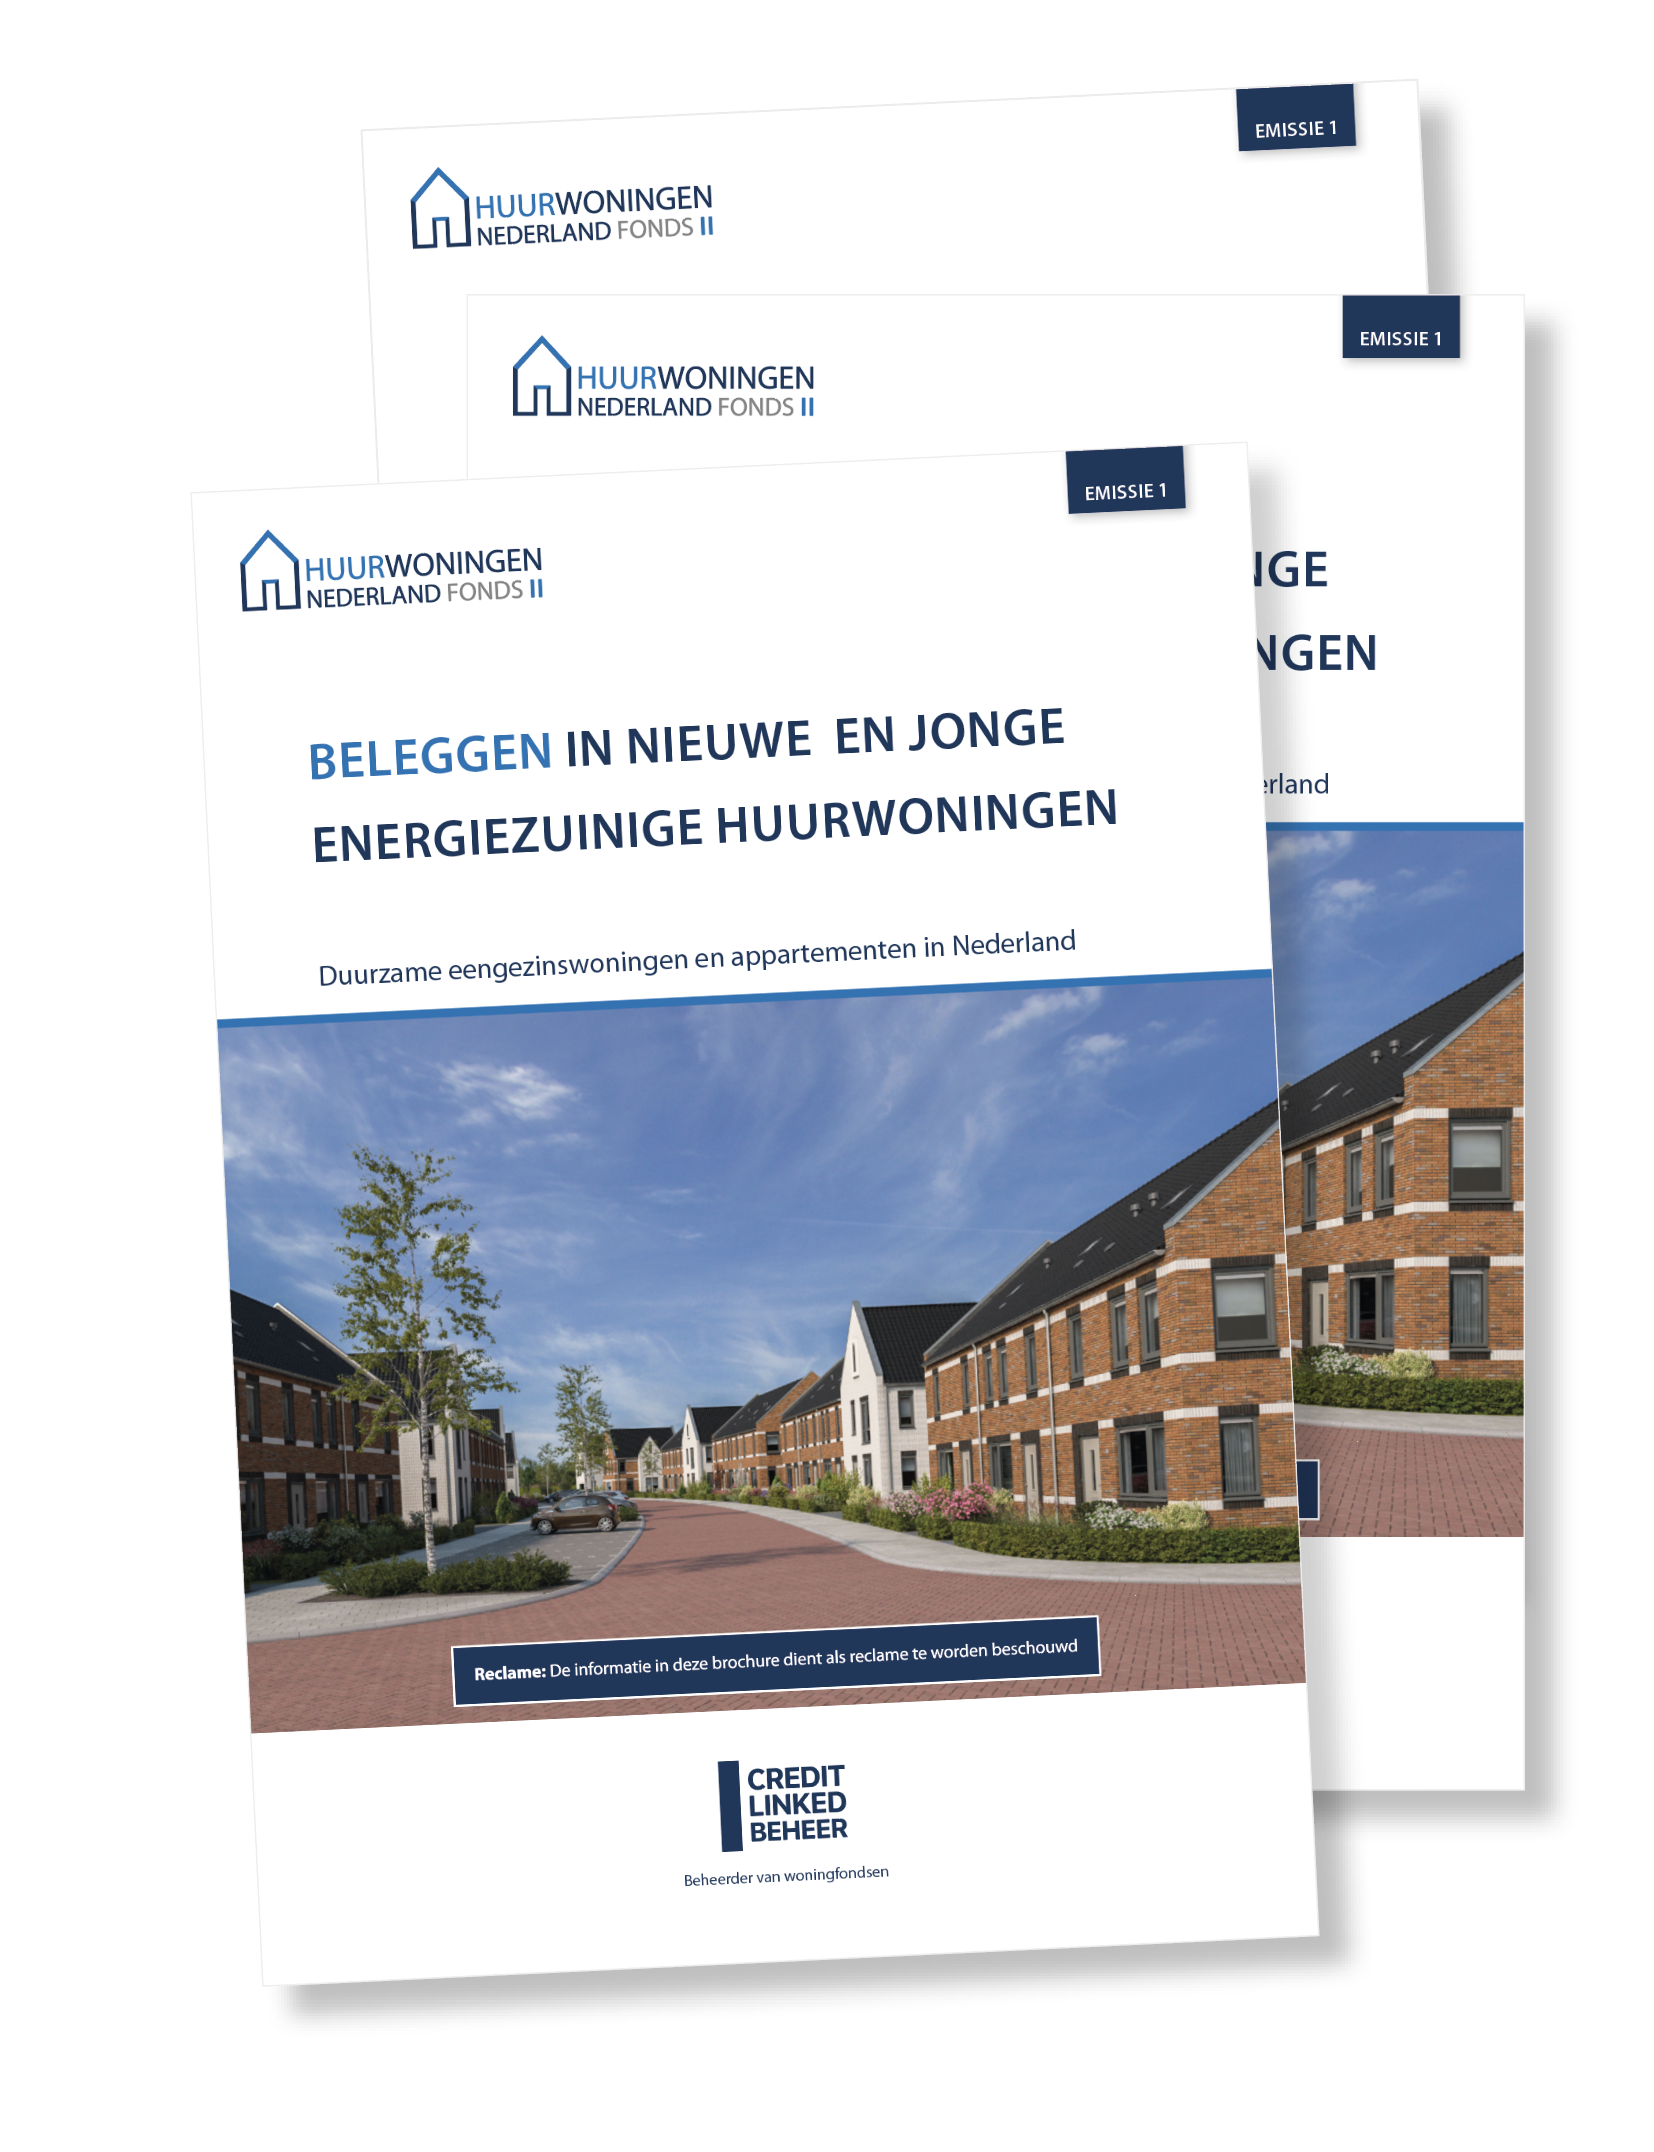 Huurwoningen Nederland Fonds 2 - brochure